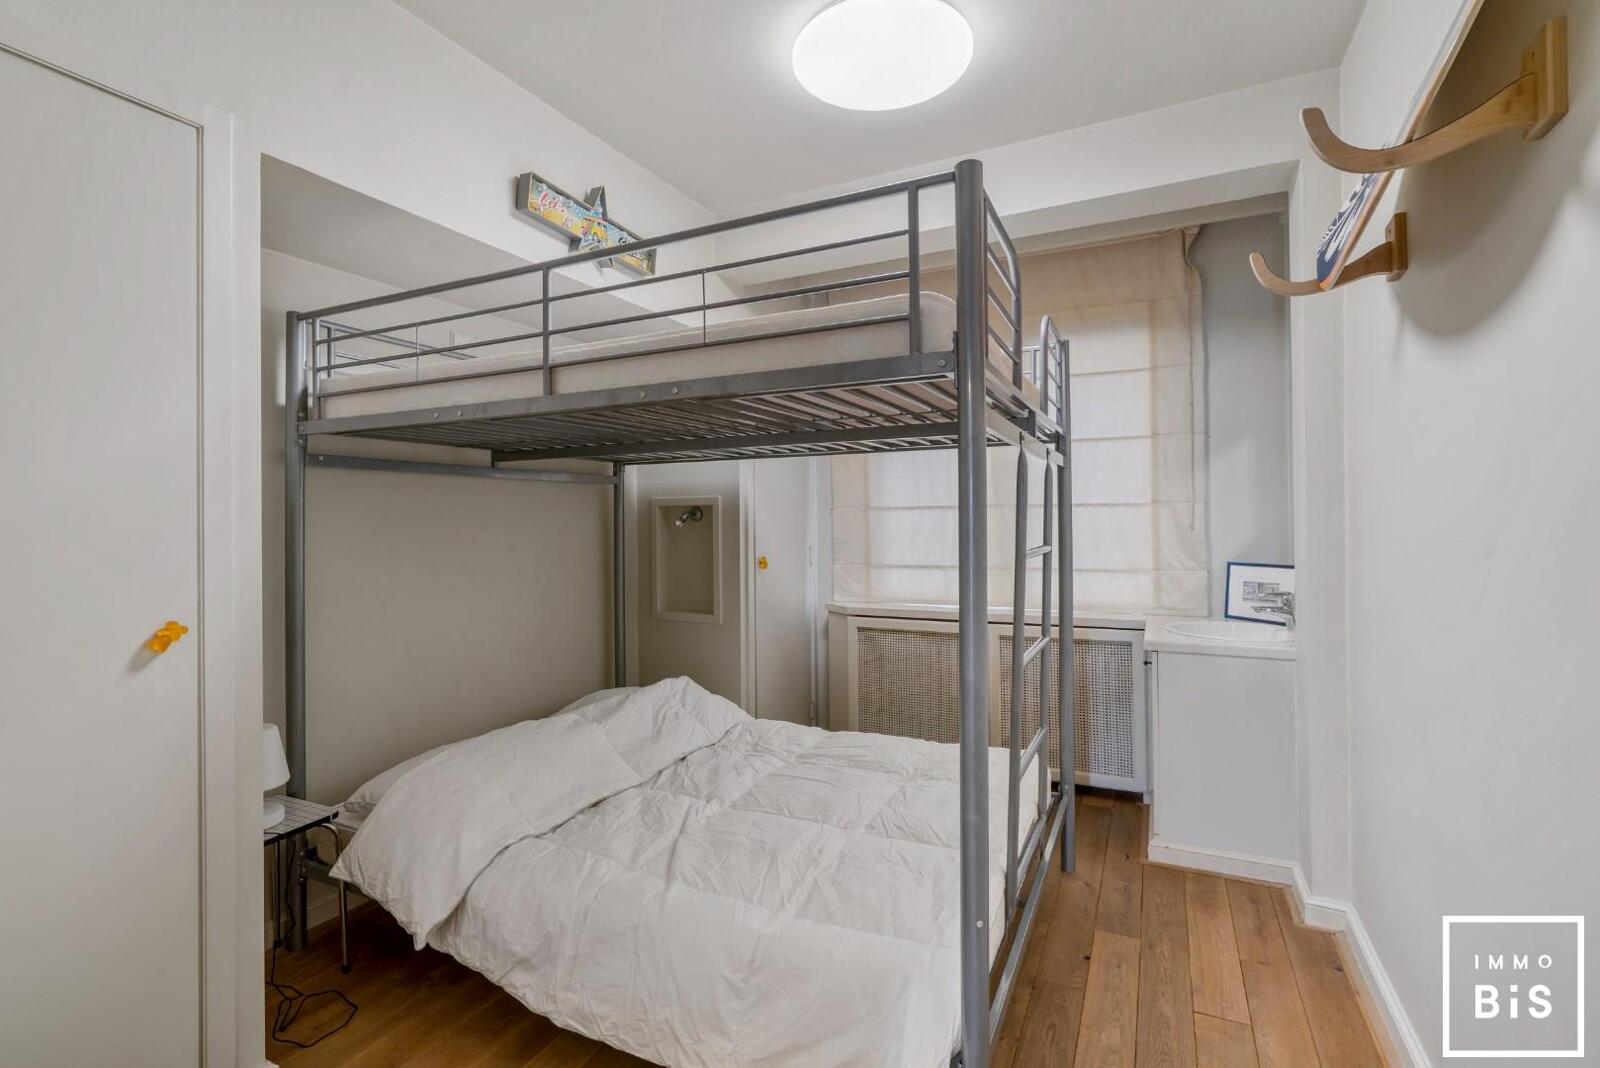 Uitstekend gelegen appartement met 3 slaapkamers in hartje Zoute op de Kustlaan aan de minigolf!  9